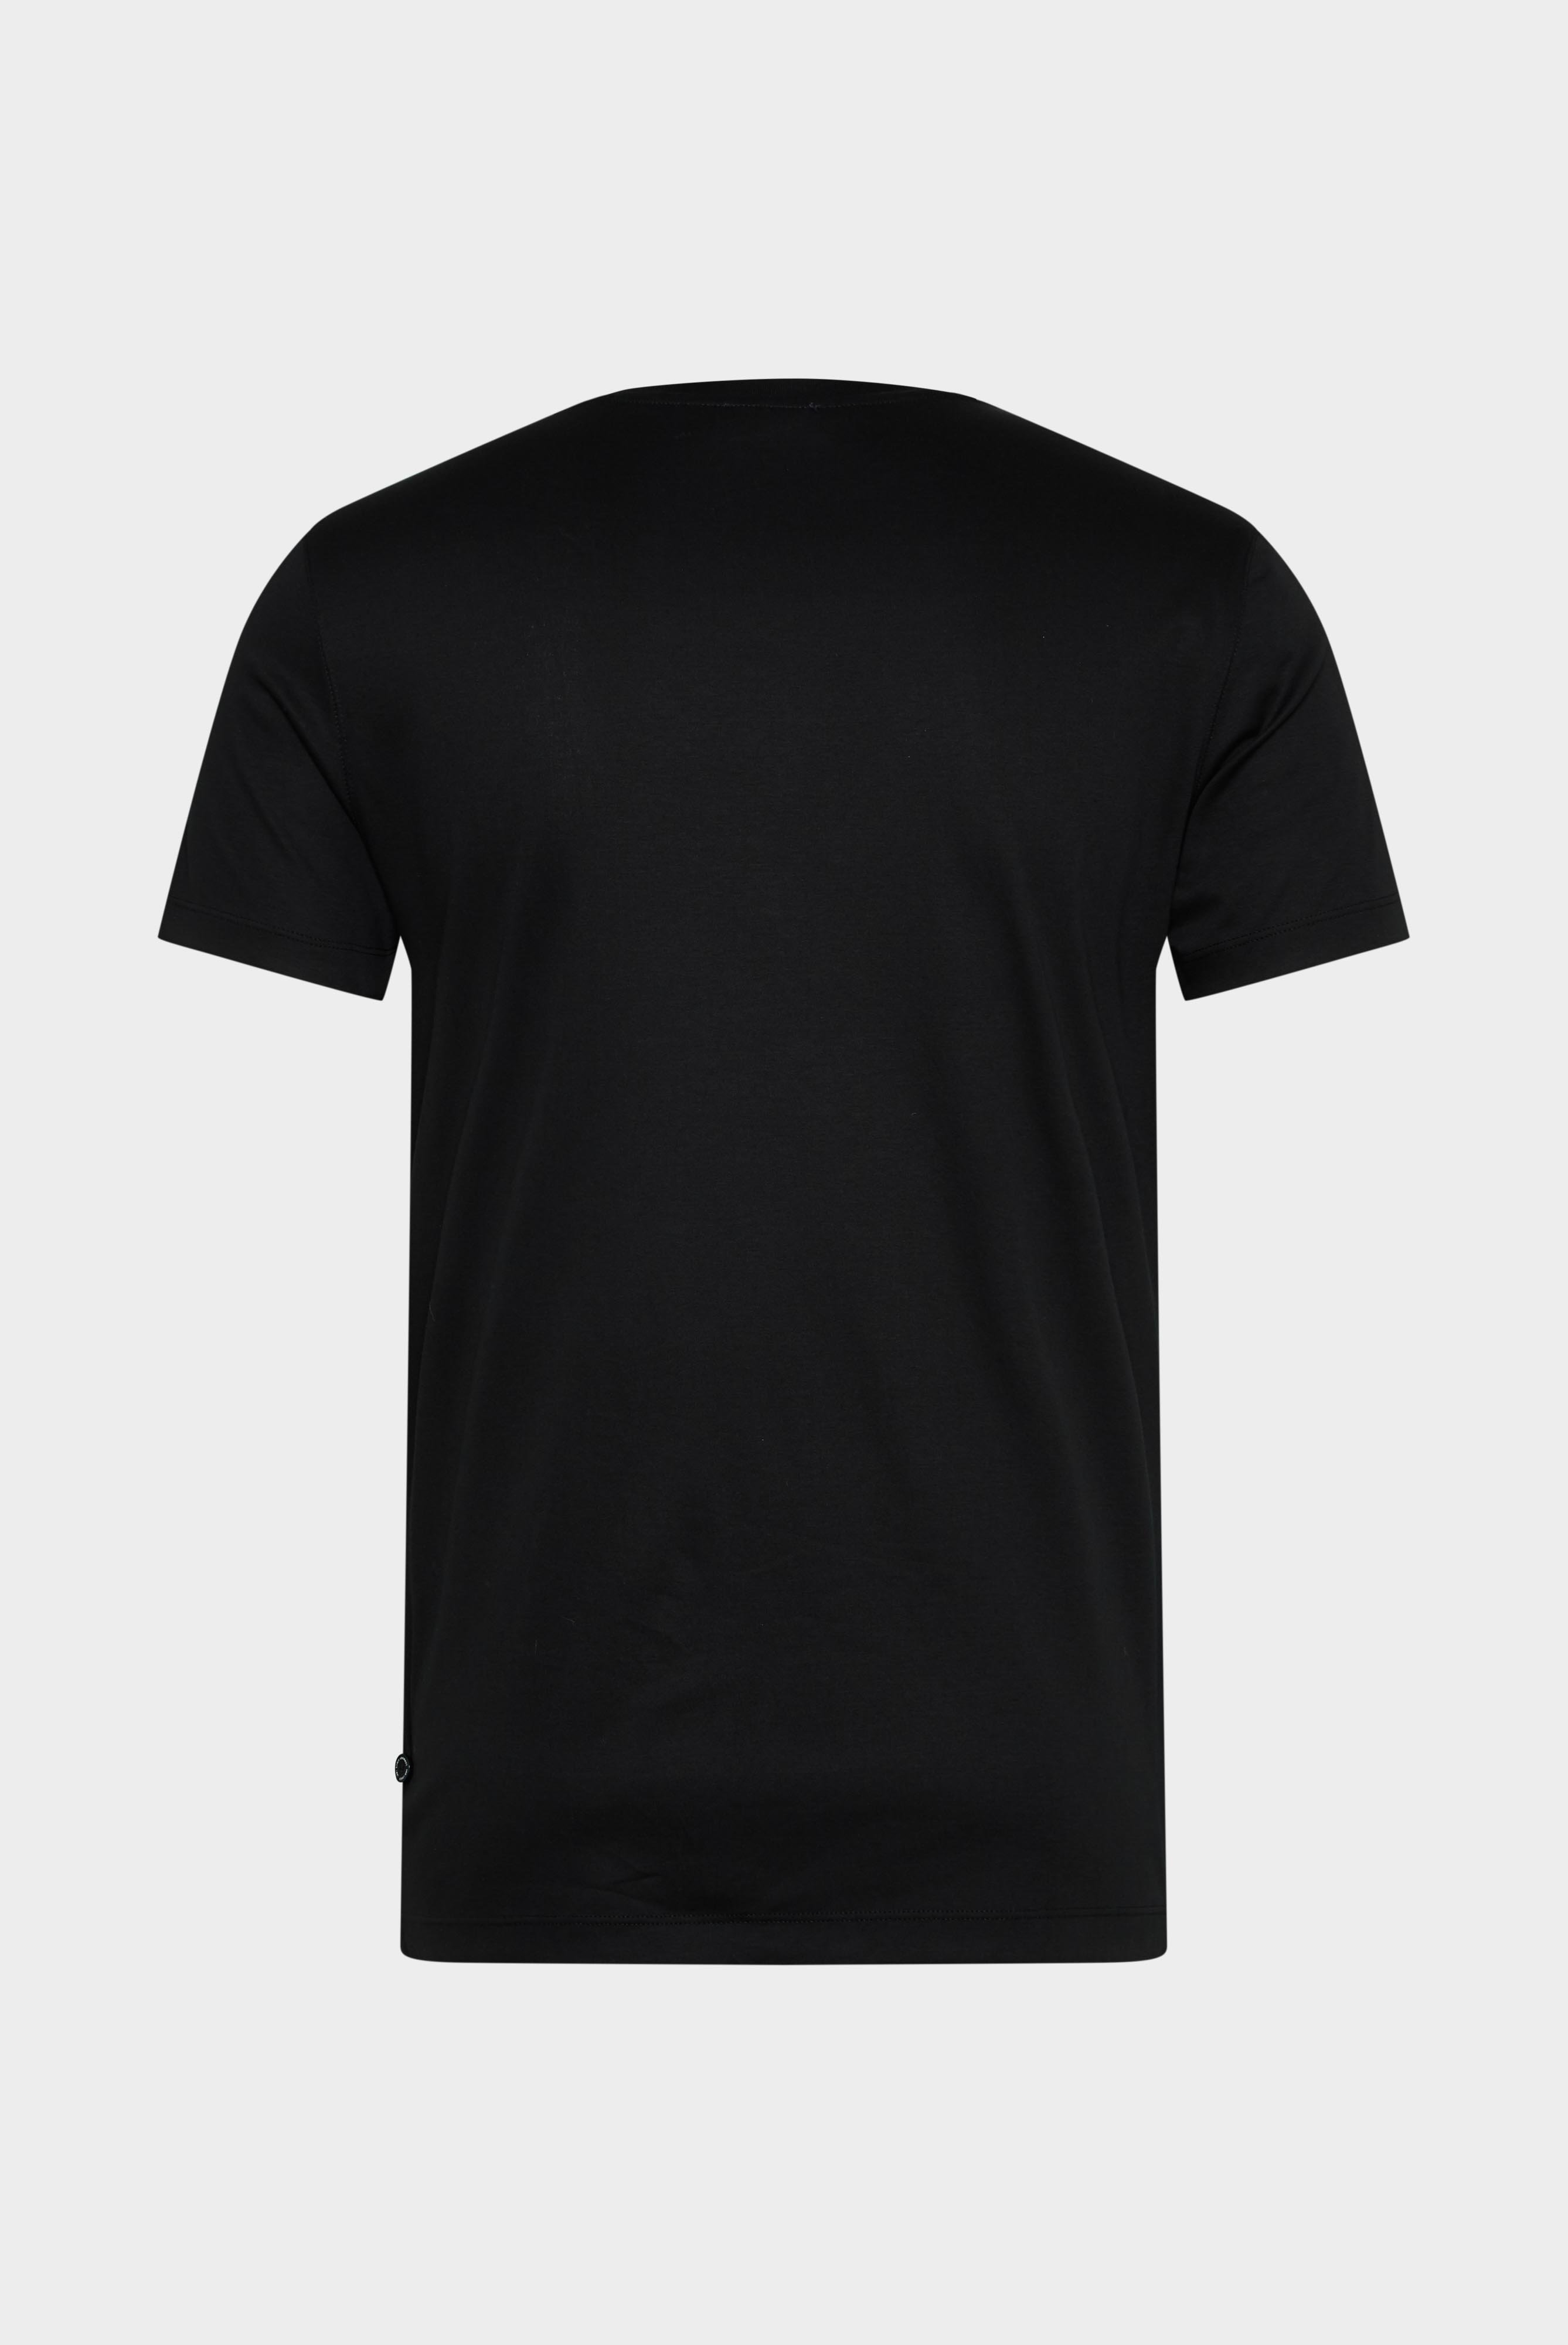 T-Shirts+V-Ausschnitt Jersey T-Shirt Slim Fit+20.1715.UX.180031.099.XL